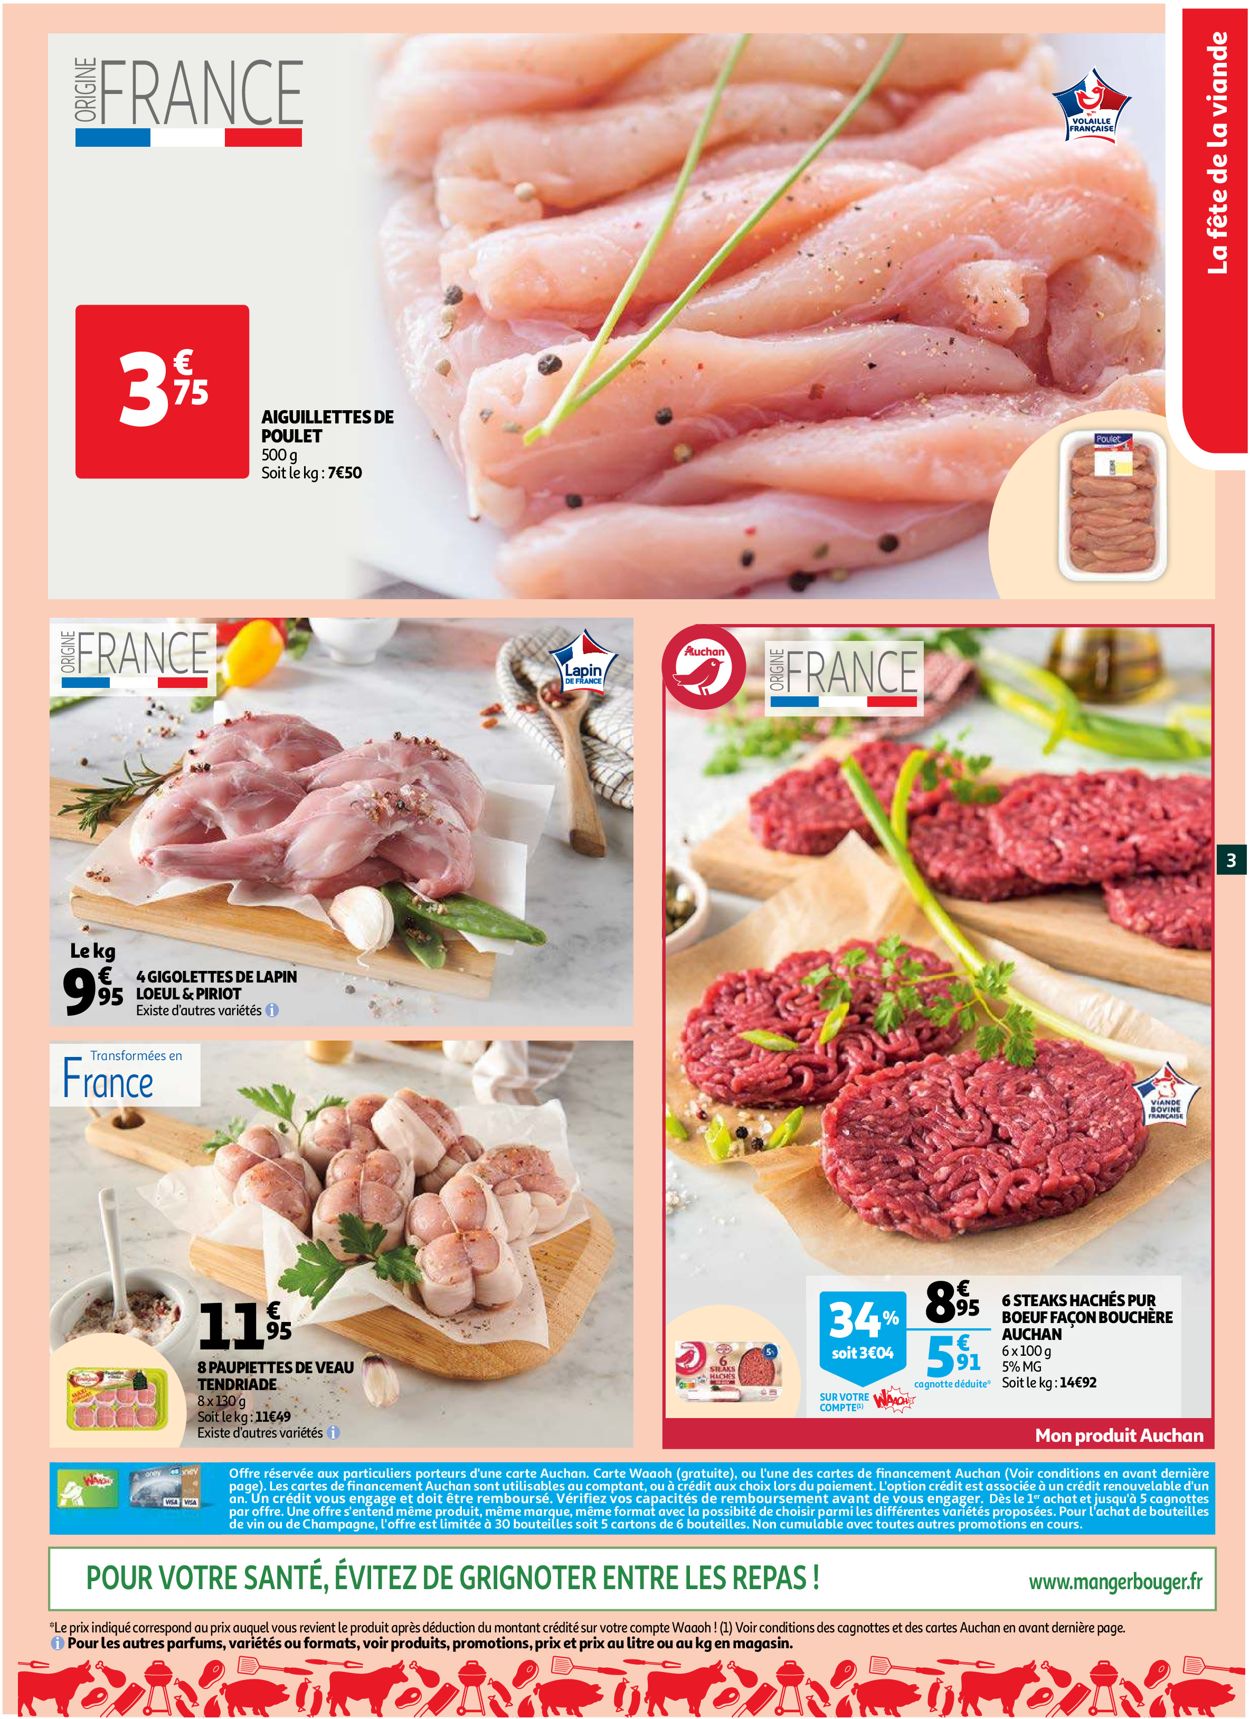 Auchan Catalogue du 03.11.2021